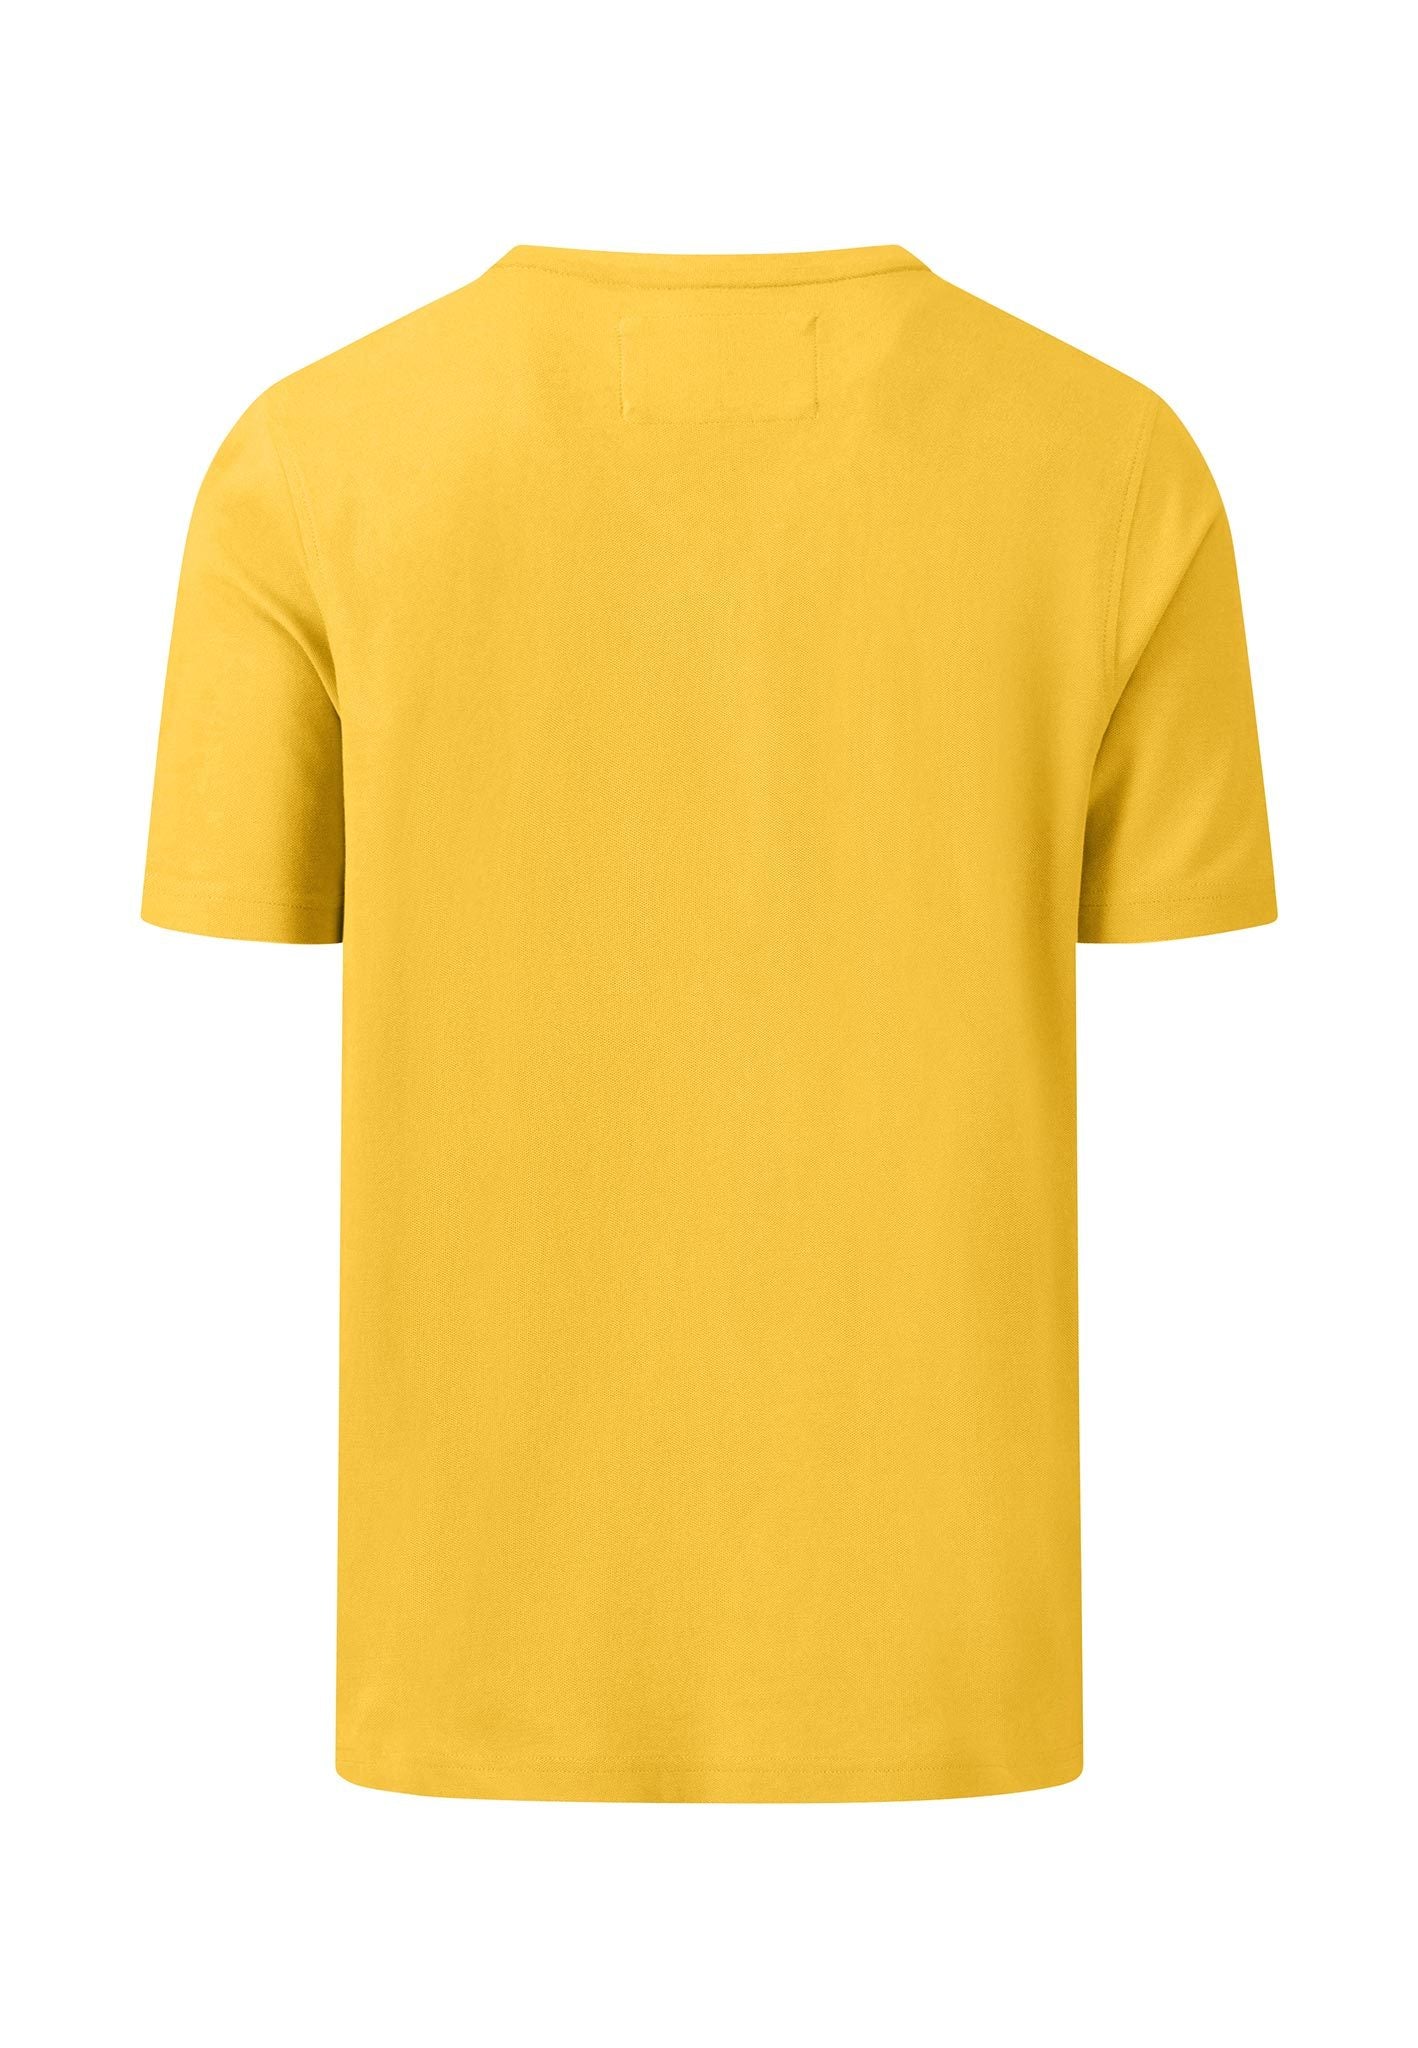 Cotton Pique T-Shirt - Pineapple